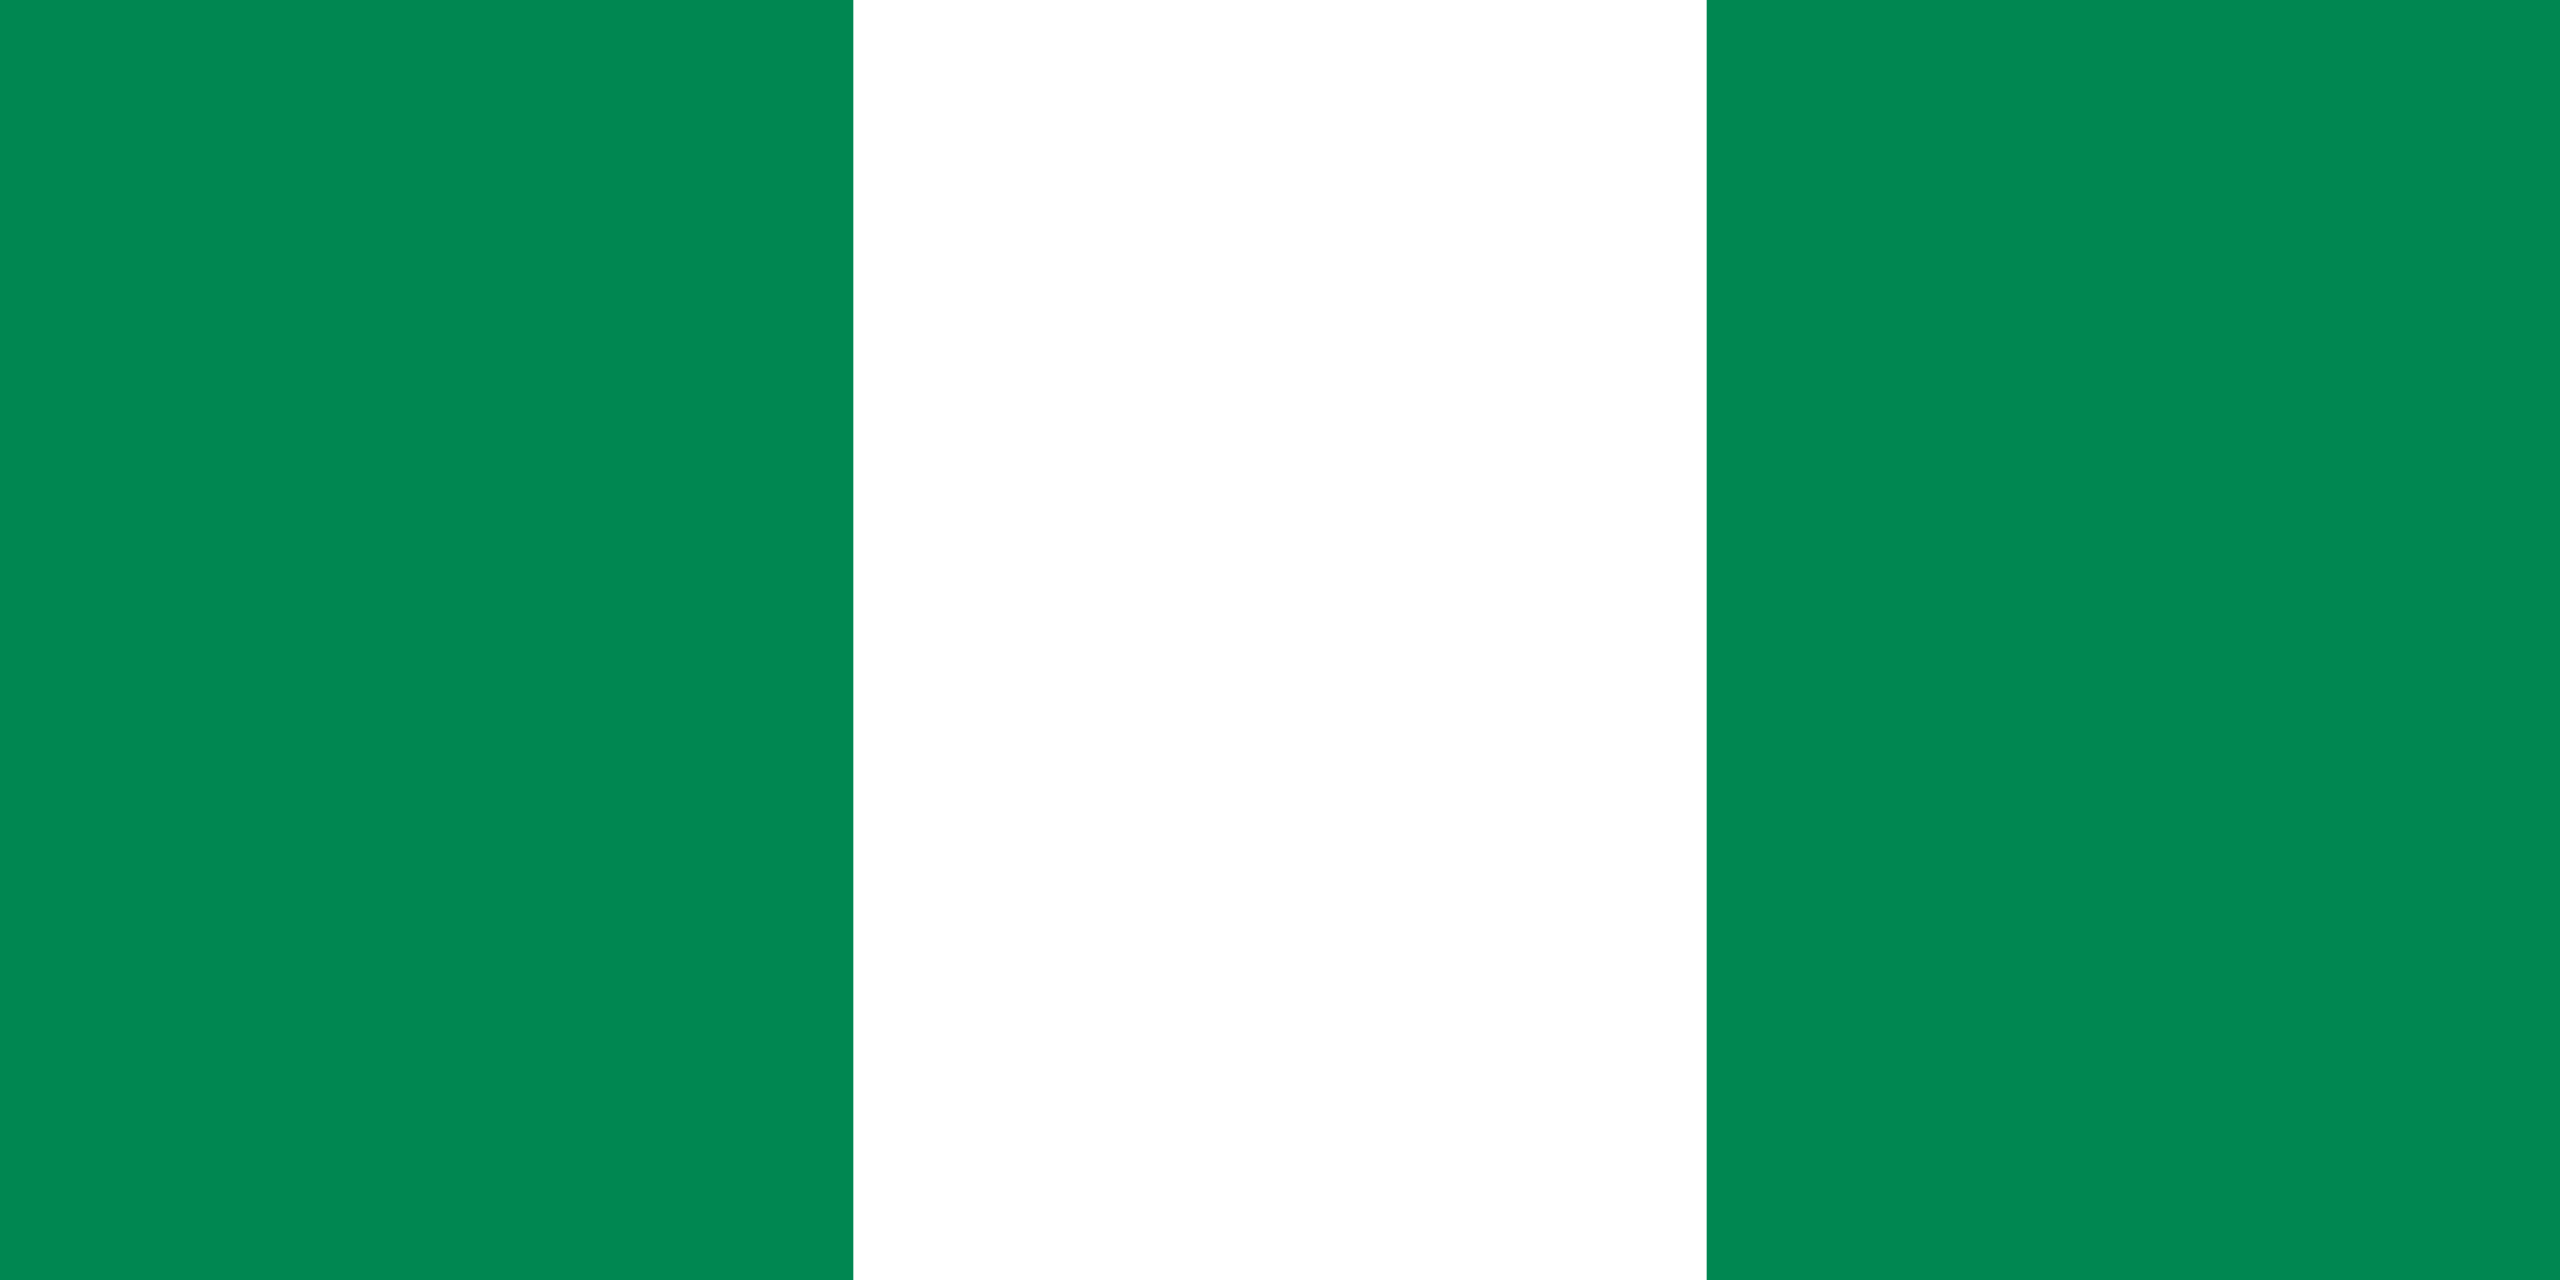 Nigéria zászló